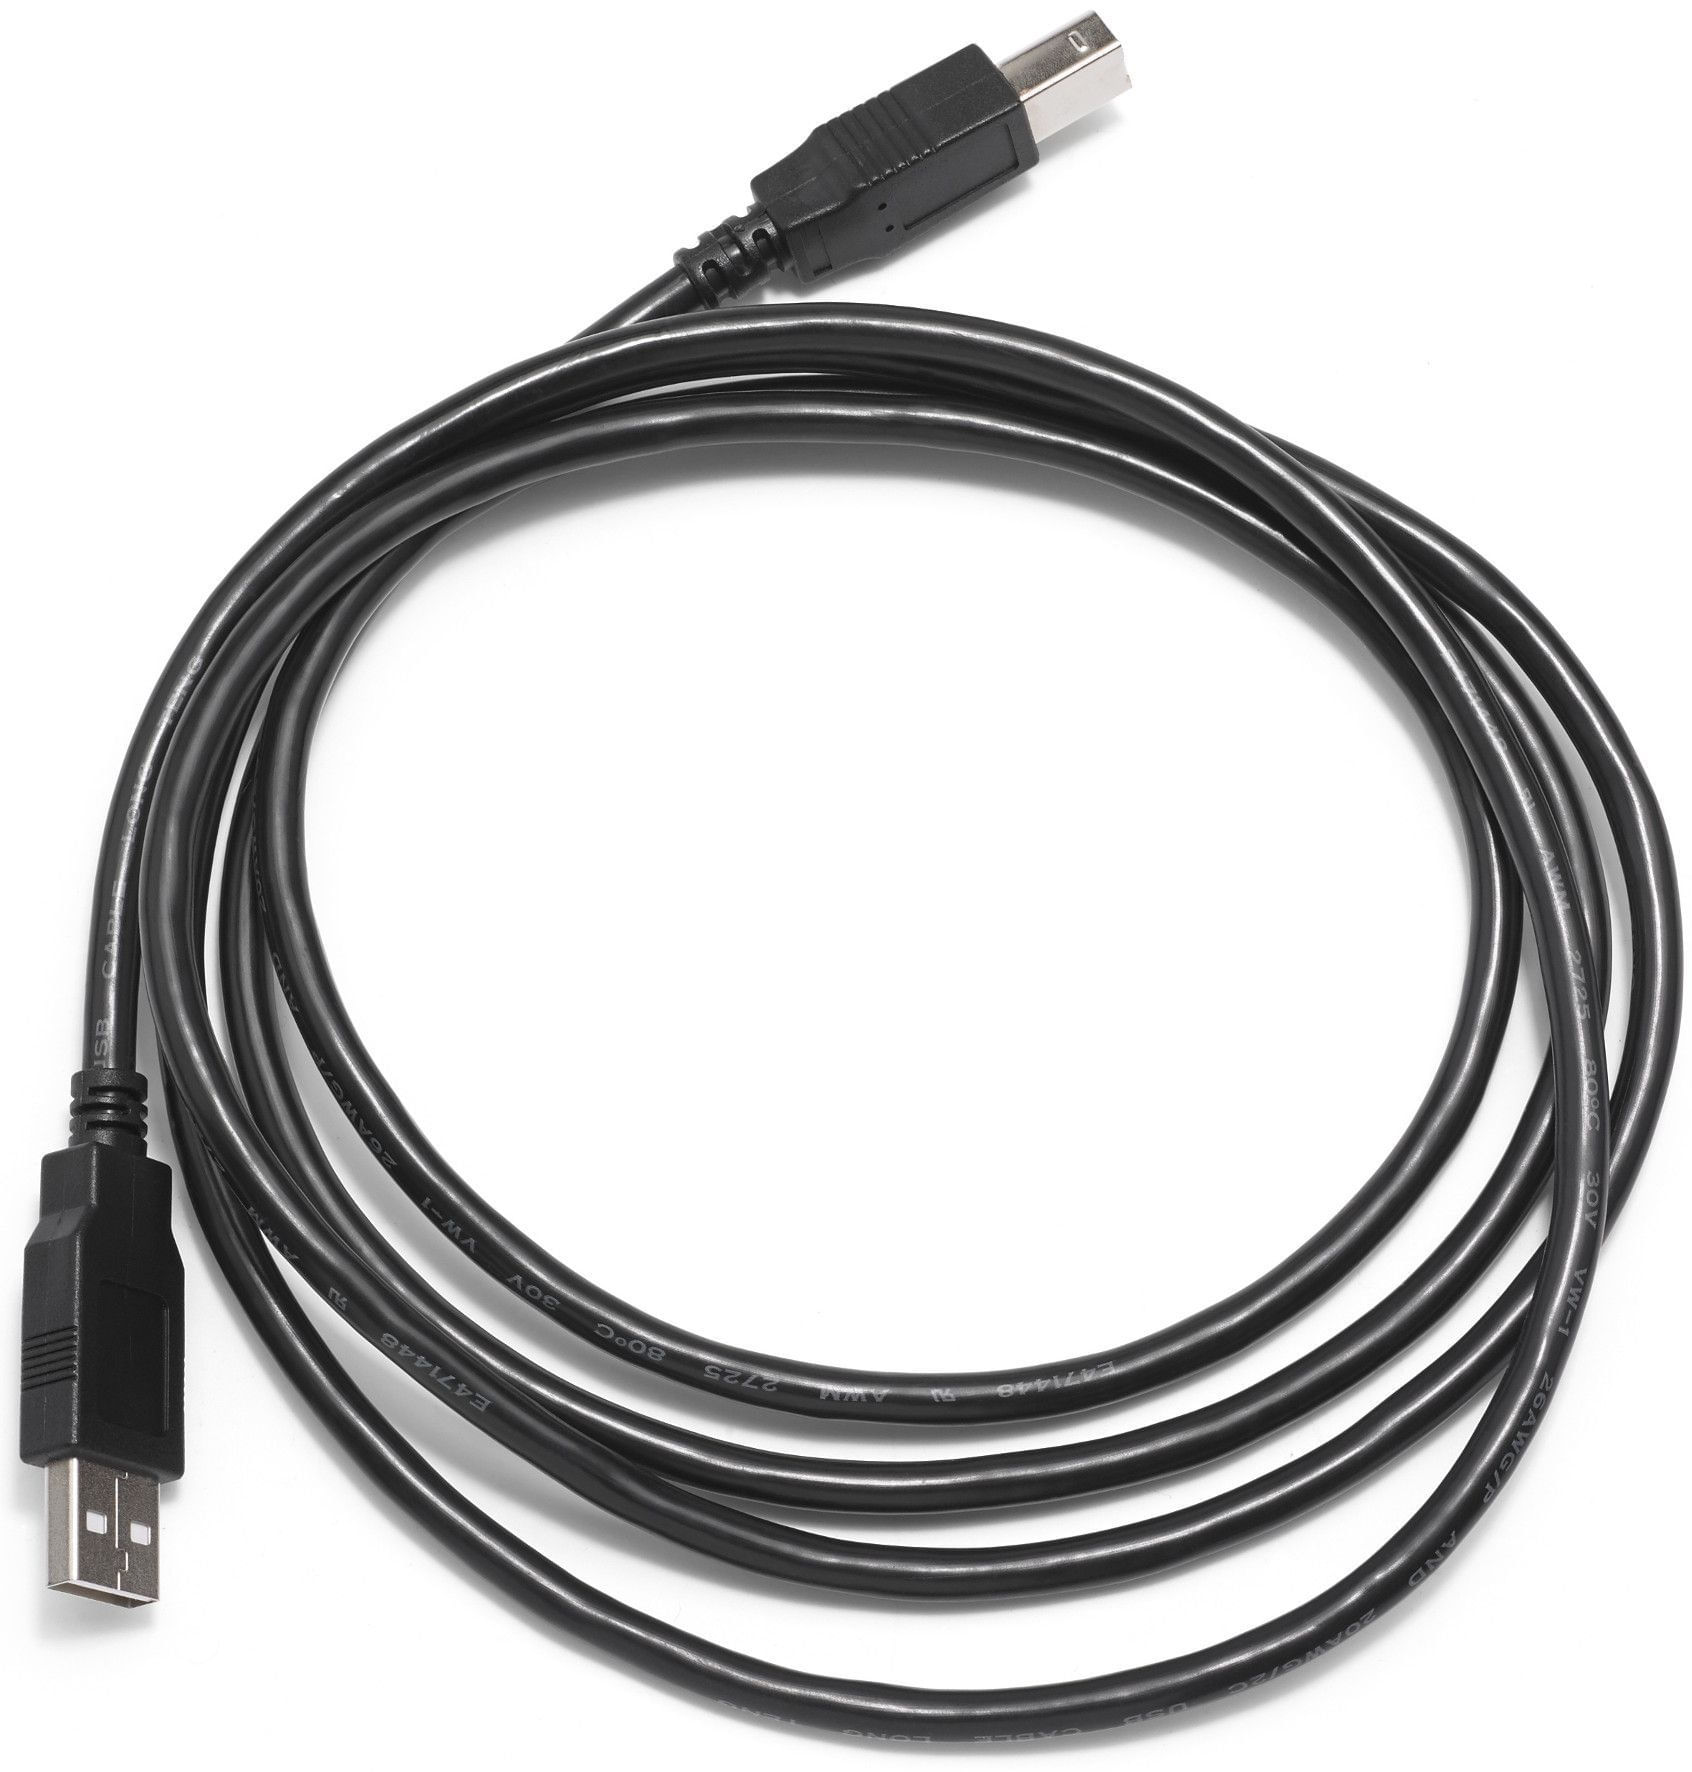 Cable Usb Para Impresora Y Multifuncion 3 Metros Universal 5570